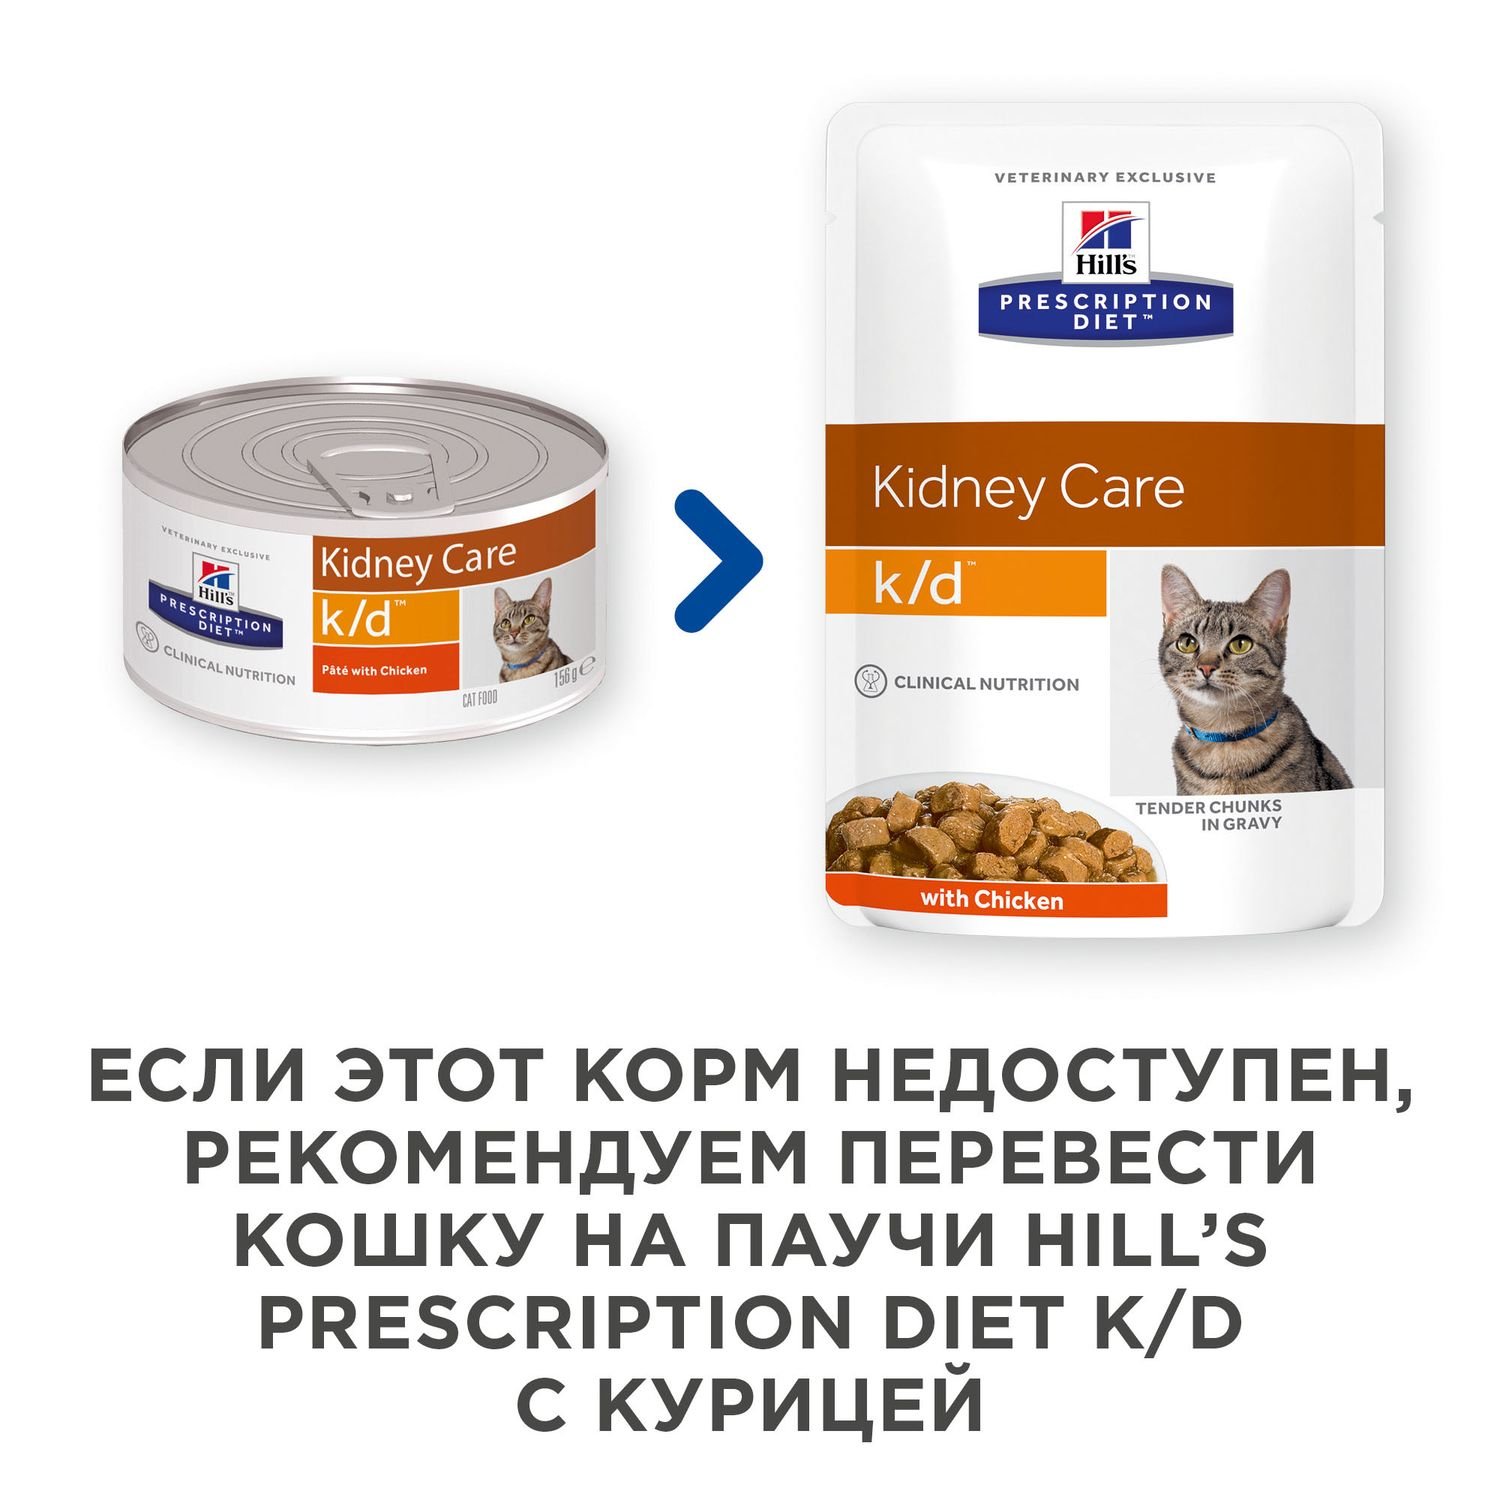 Корм для кошек HILLS 156г Prescription Diet k/d Kidney Care для почек с курицей консервированный - фото 4